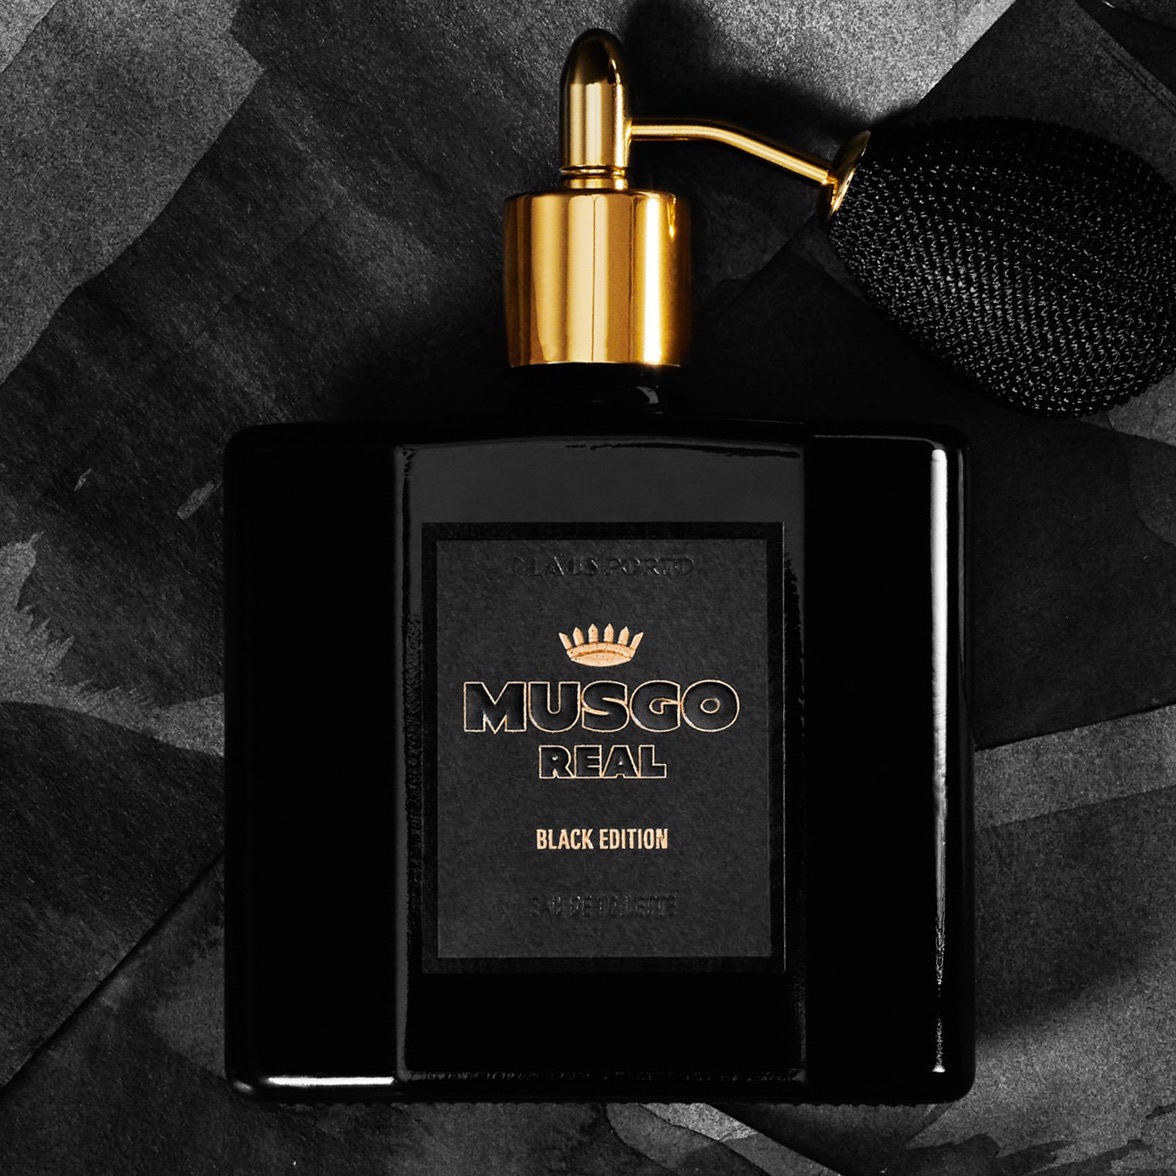 Musgo Real Eau de Toilette Black Edition 100ml - 3.3 - MR-C009